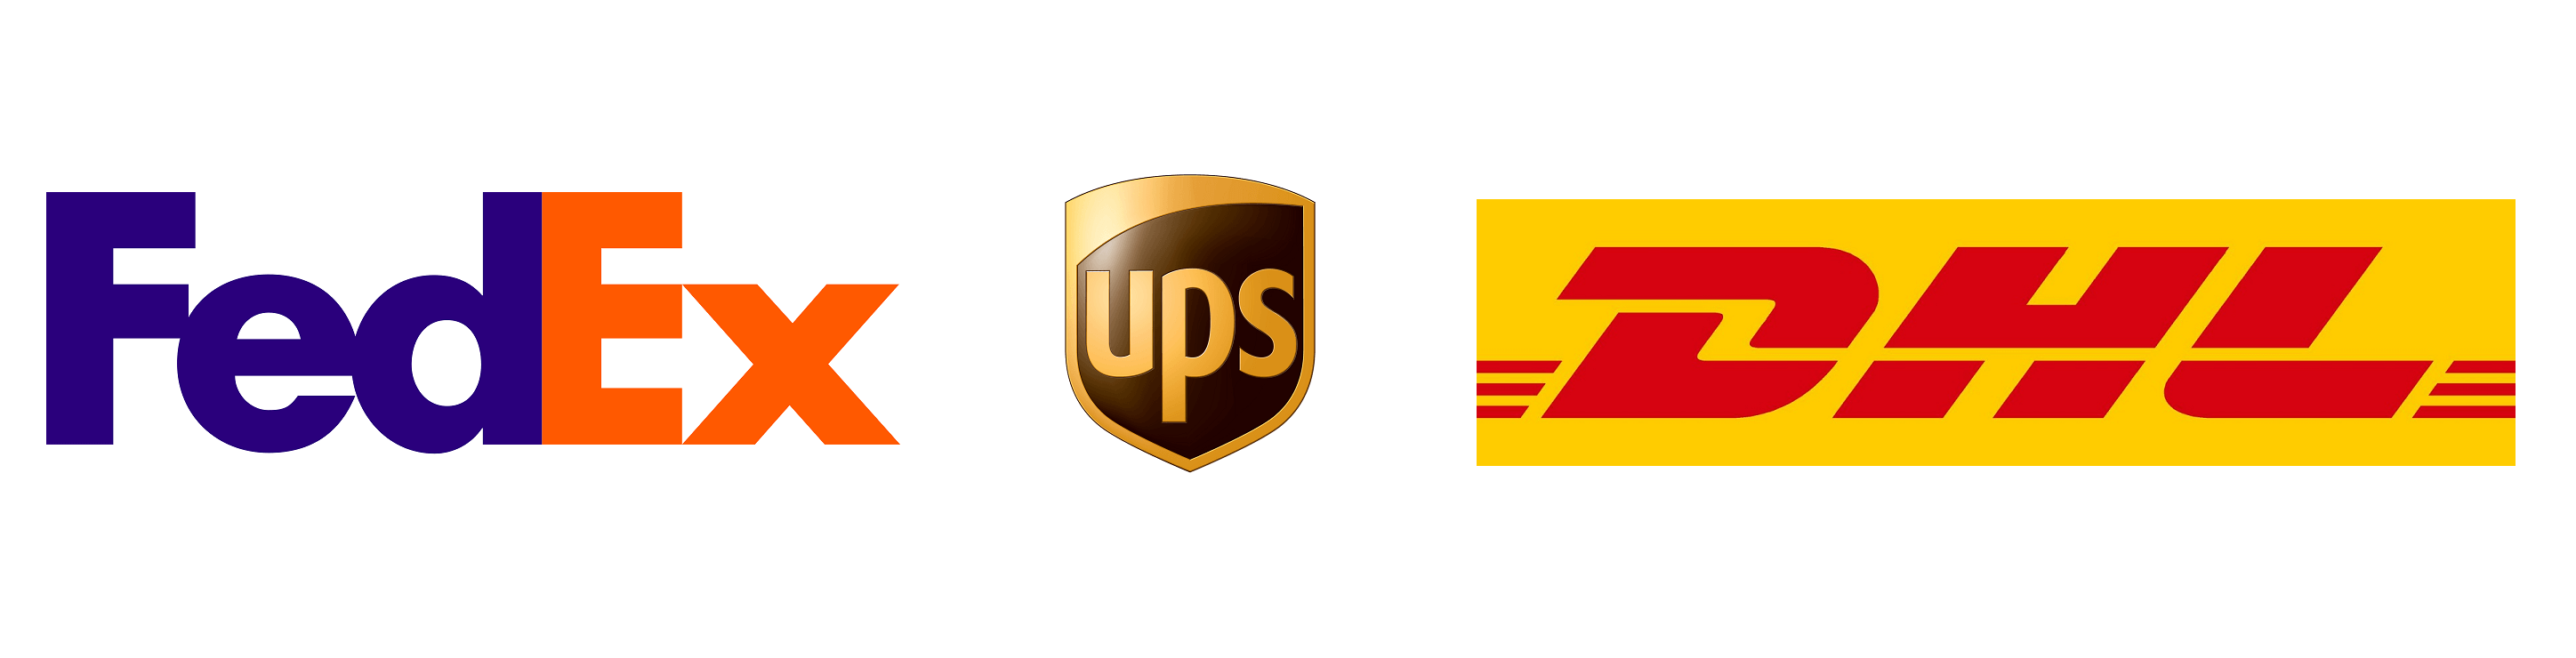 Image result for UPS Fedex DHL